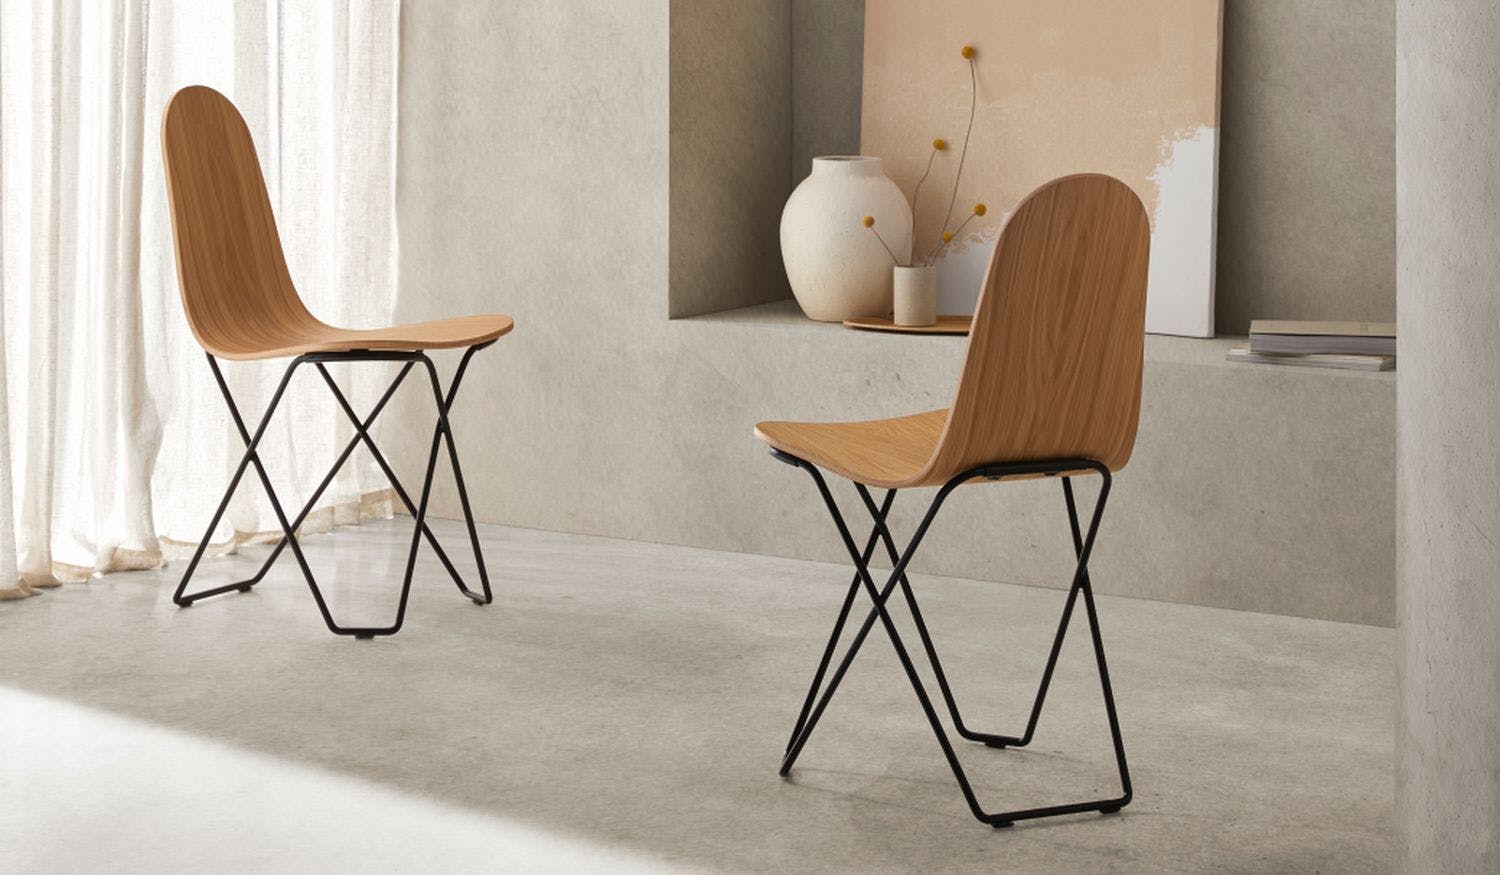 modern wooden chairs in minimalist design